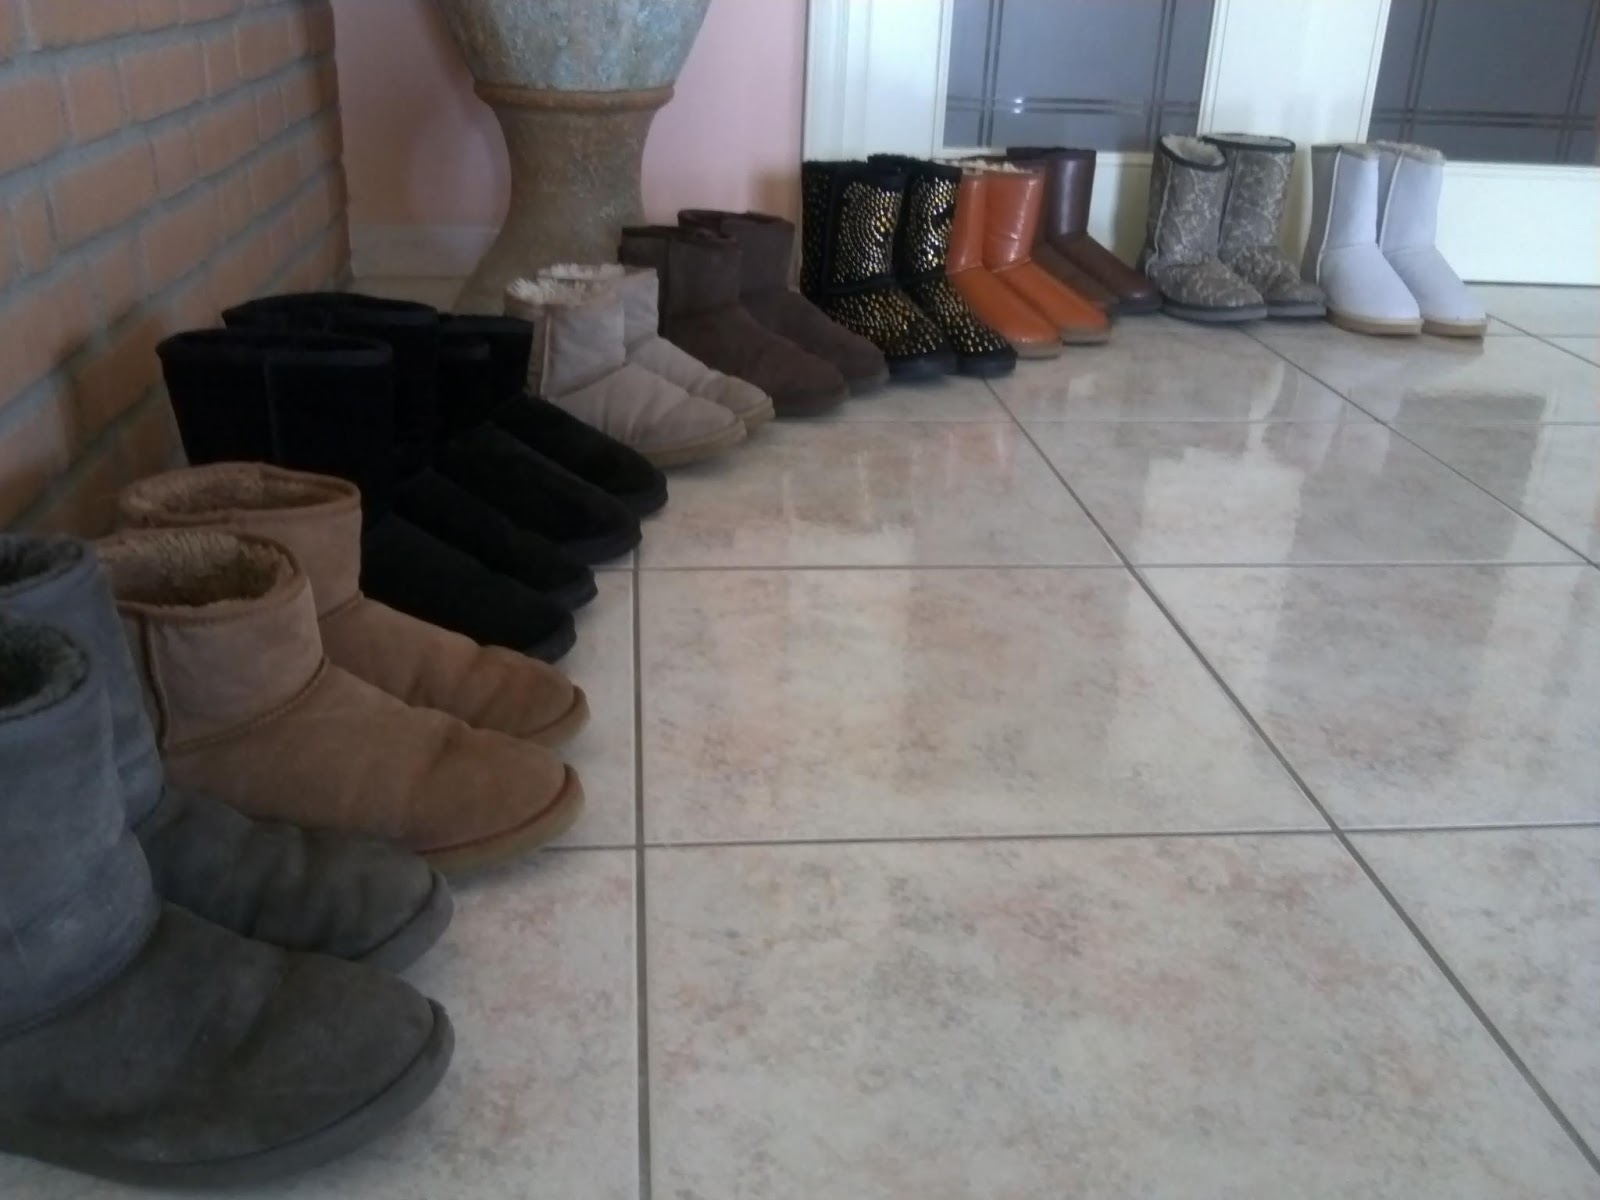 Merg ik zal sterk zijn De onze UGG Boots collection, my own - Melissa Cabrini